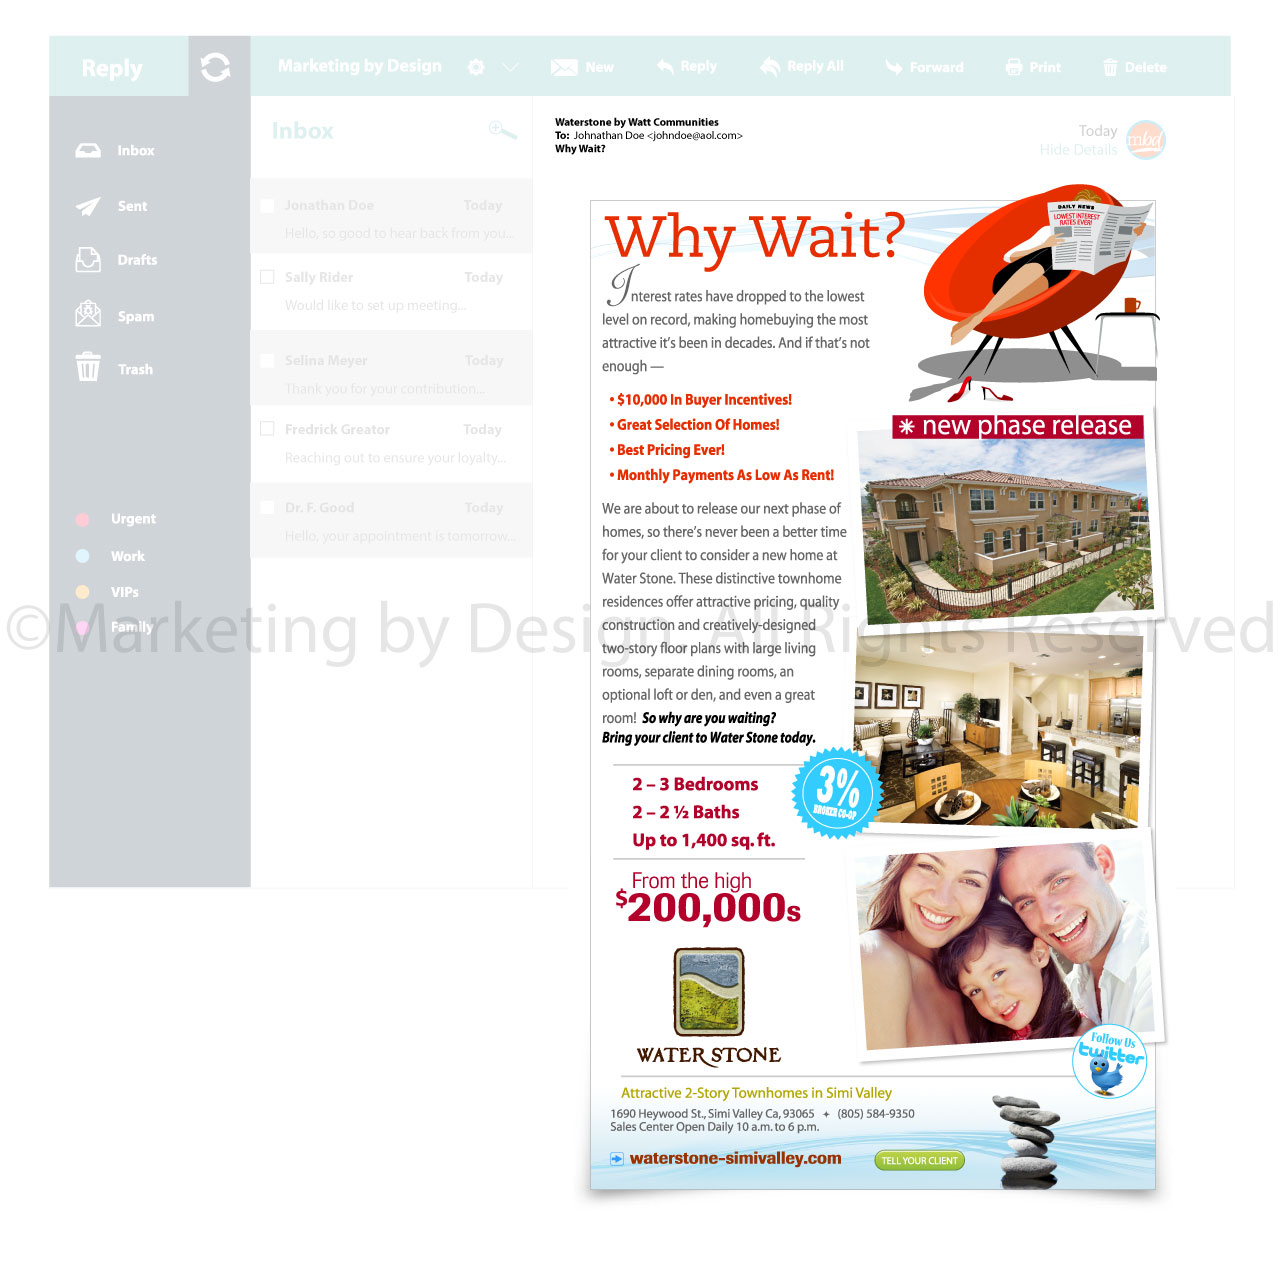 Marketing by Design | Portfolio: Waterstone "Why Wait" eBroadcast